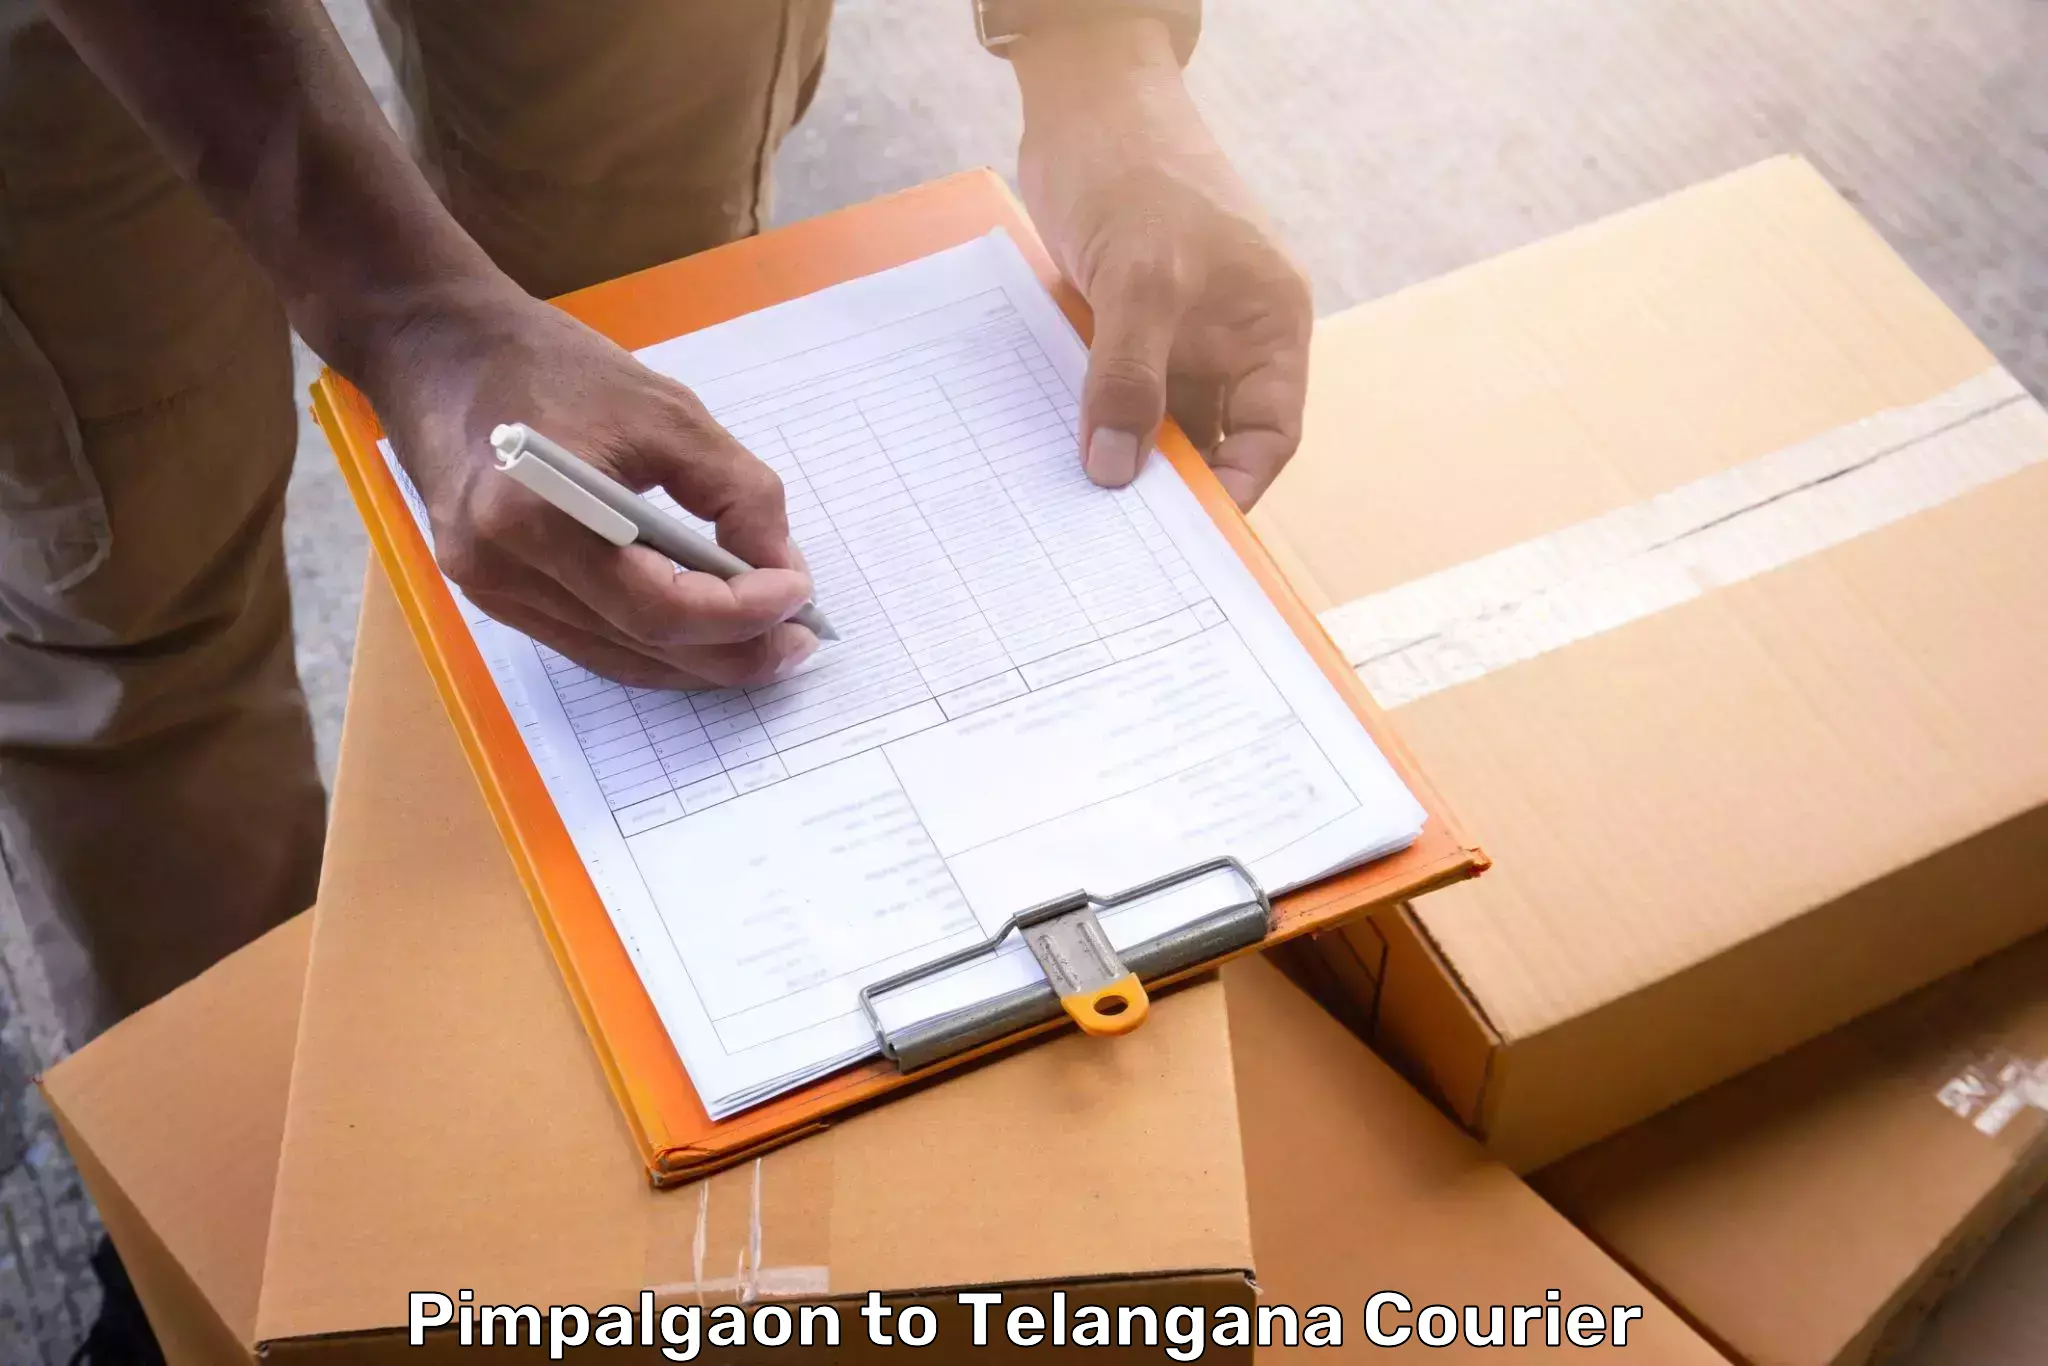 Luggage delivery network Pimpalgaon to Kothagudem